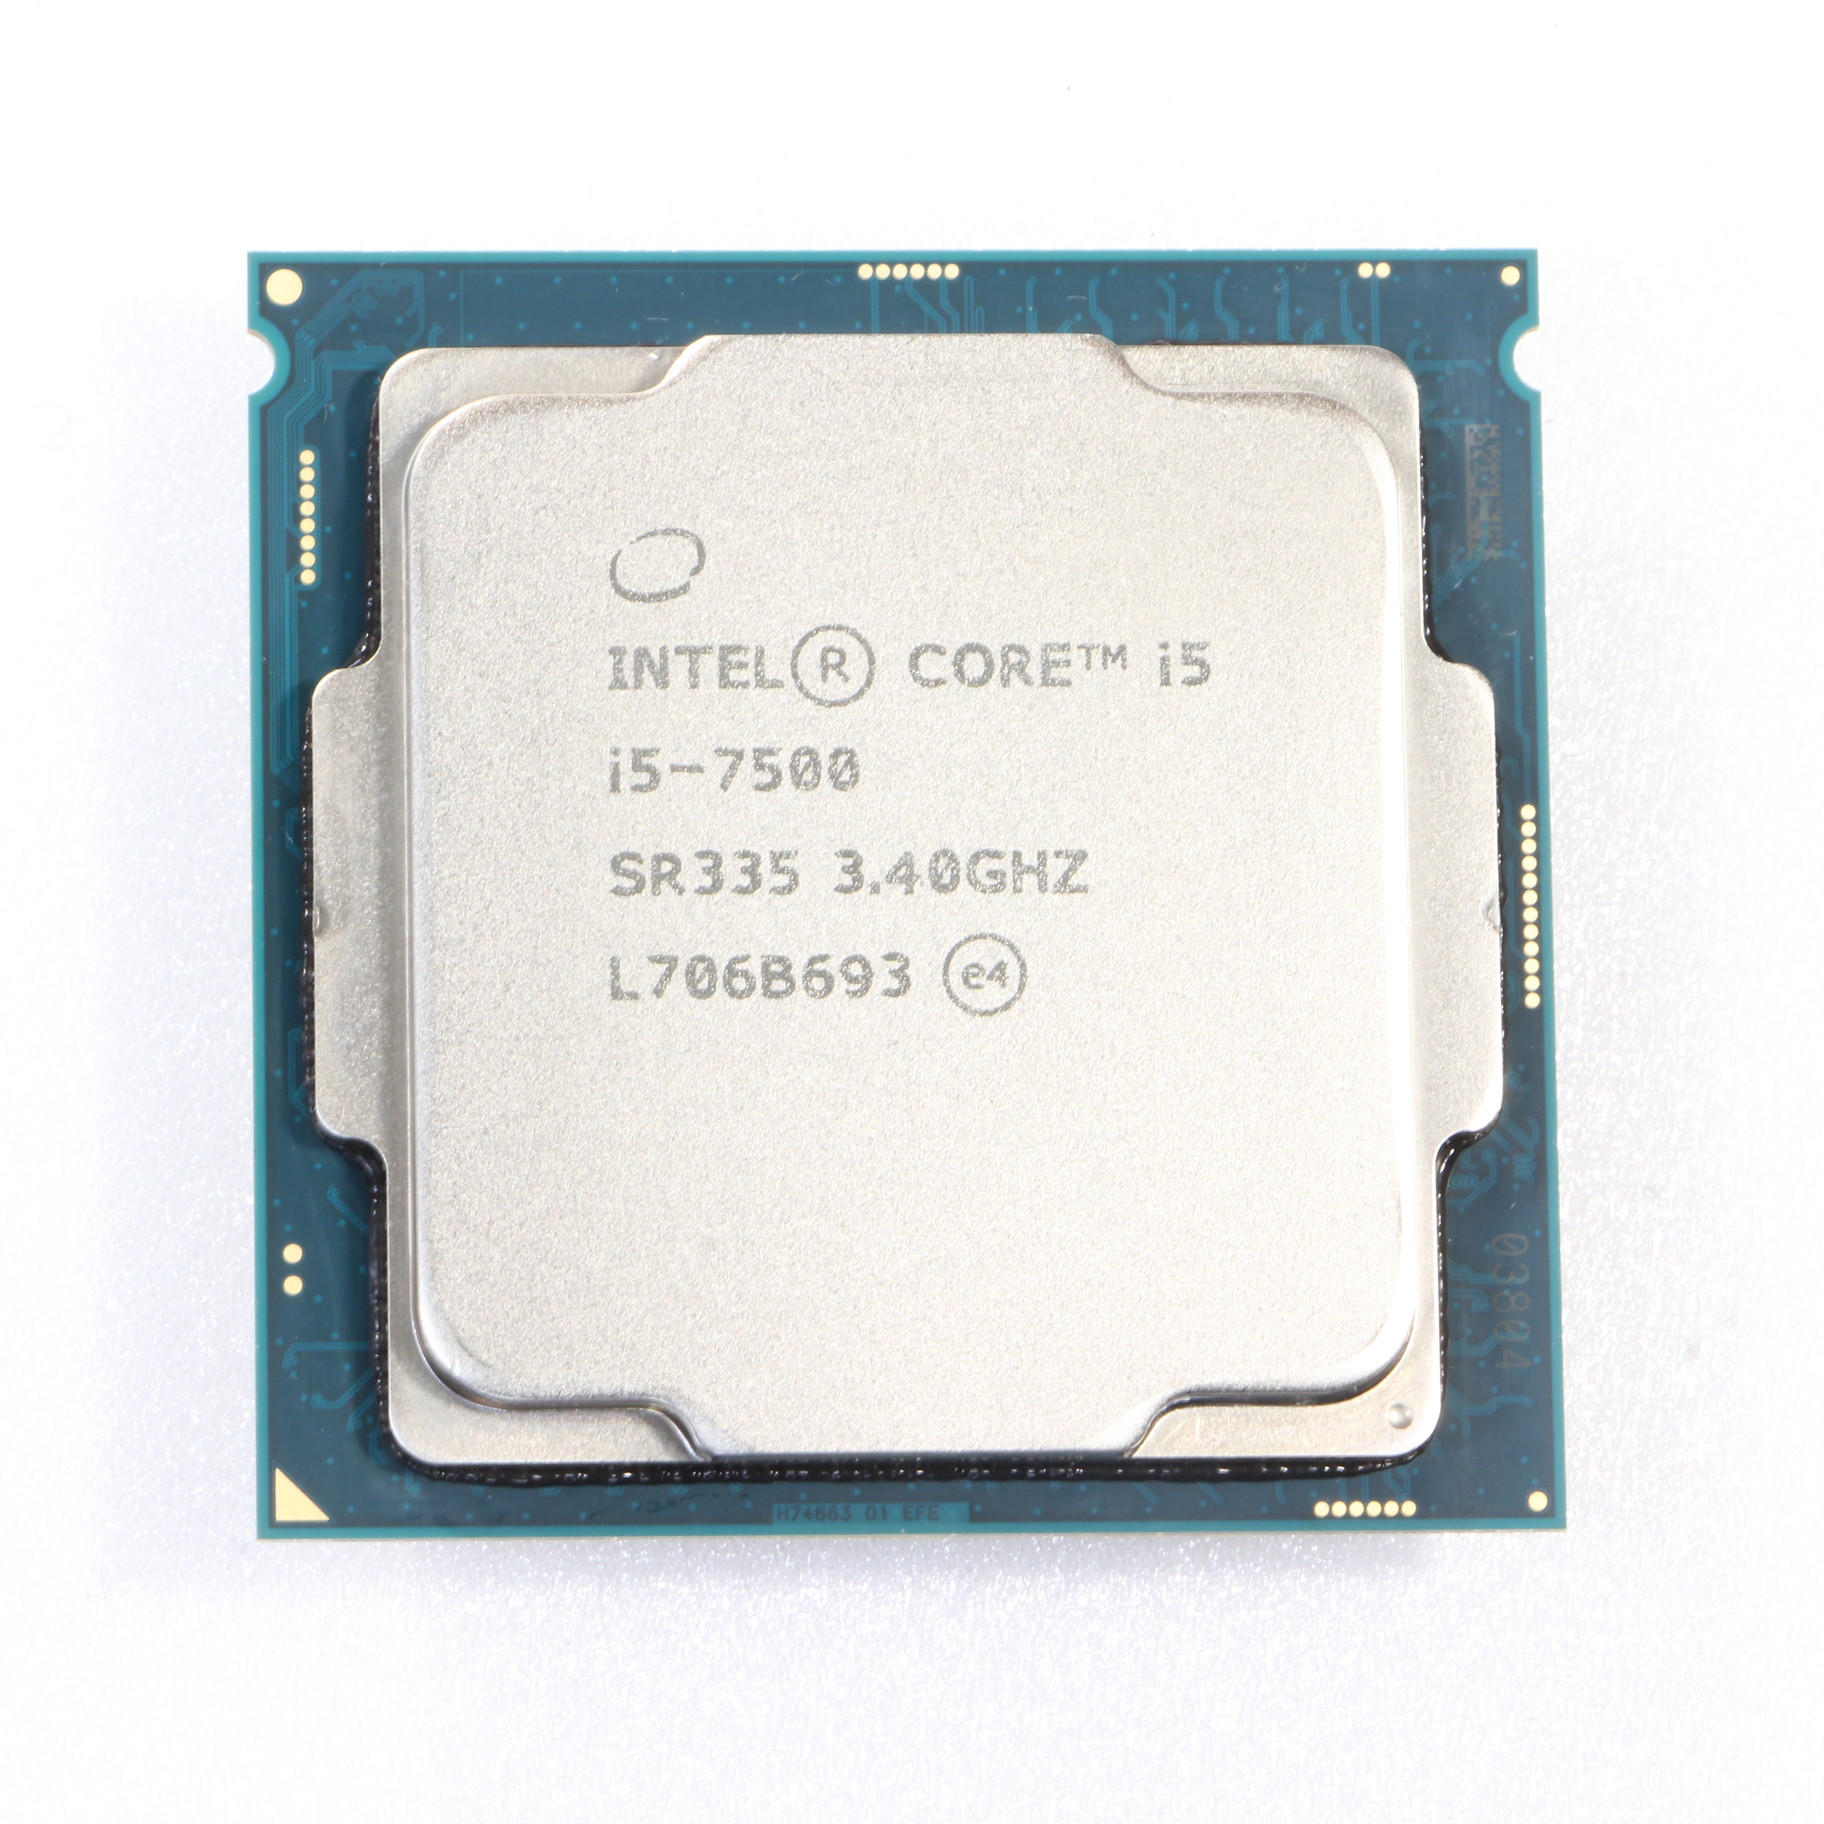 Intel Core i5 7500 Kabylake